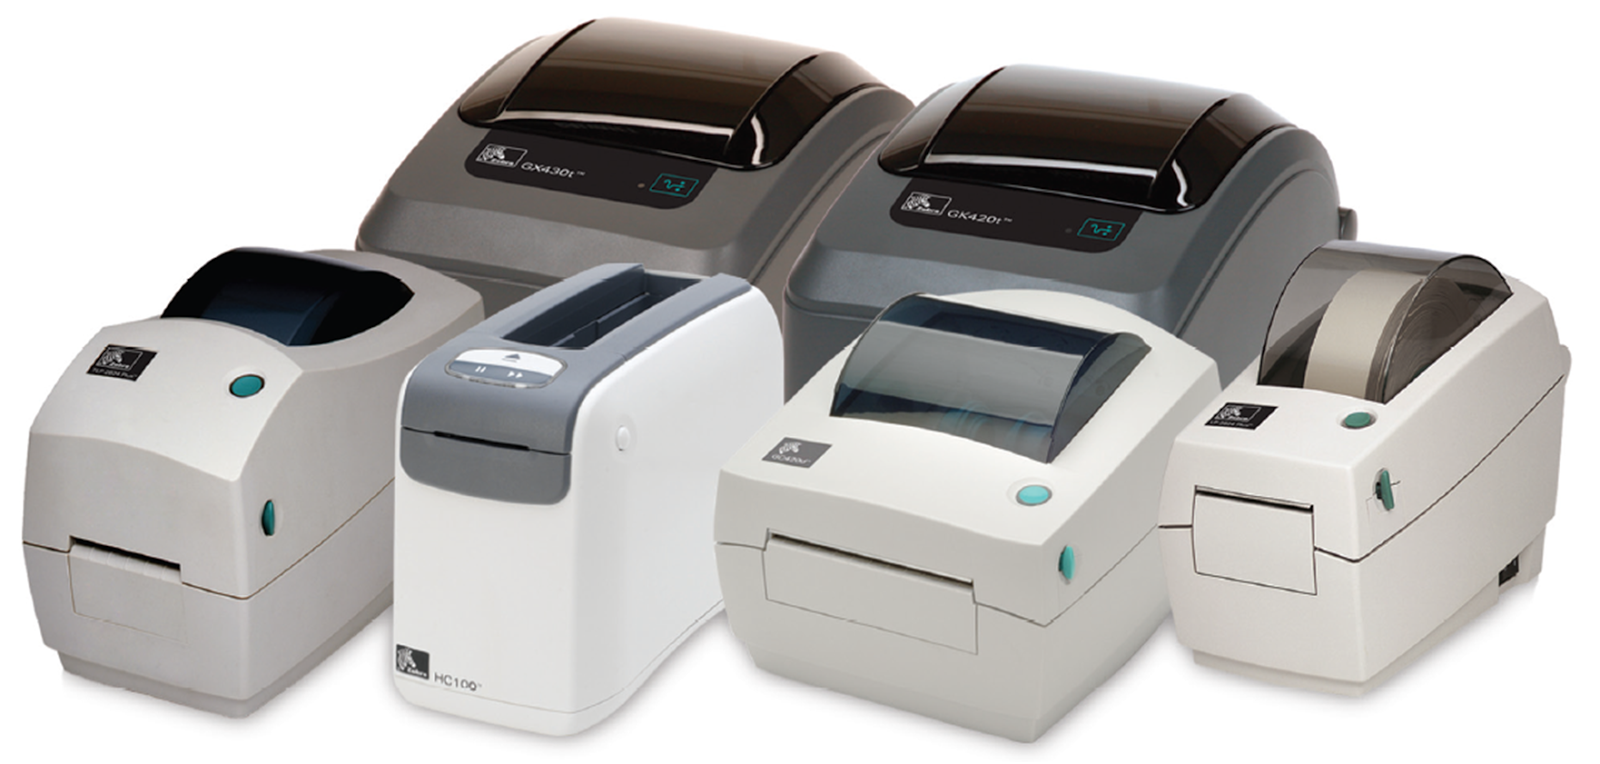 impressoras-zebra-gc420t-hc100-gk420t-gt800